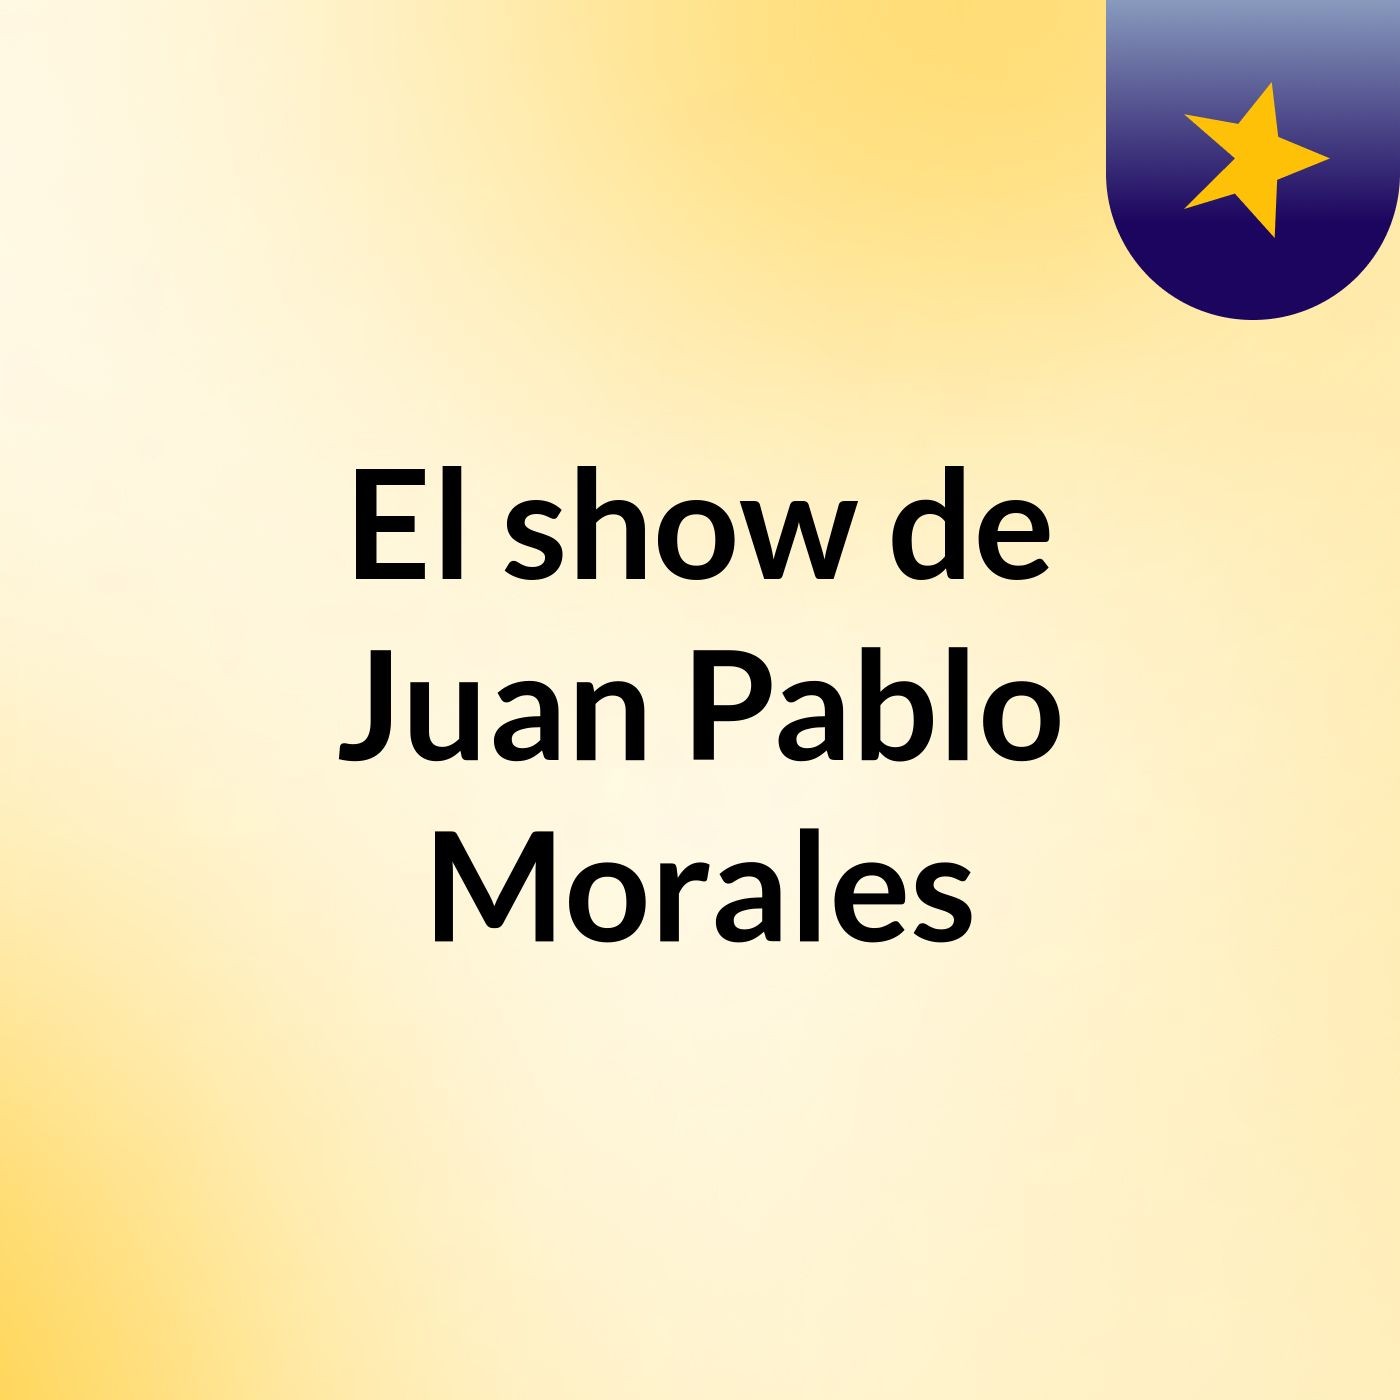 Episodio 3 - El show de Juan Pablo Morales